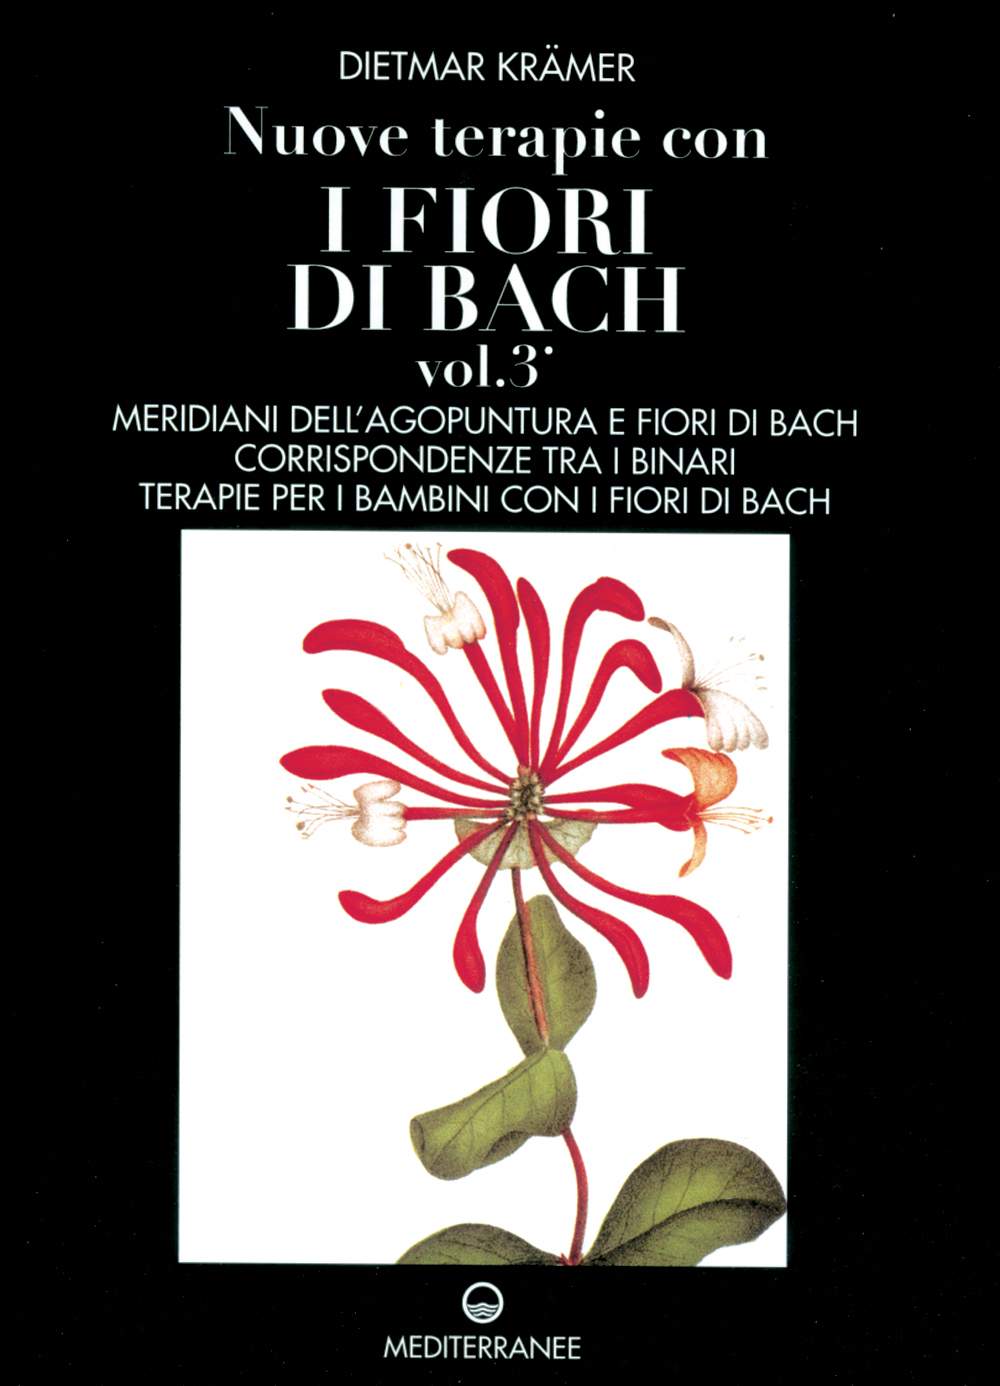 Libri Dietmar Kramer - I Fiori Di Bach Vol.3 NUOVO SIGILLATO, EDIZIONE DEL 01/08/1998 SUBITO DISPONIBILE